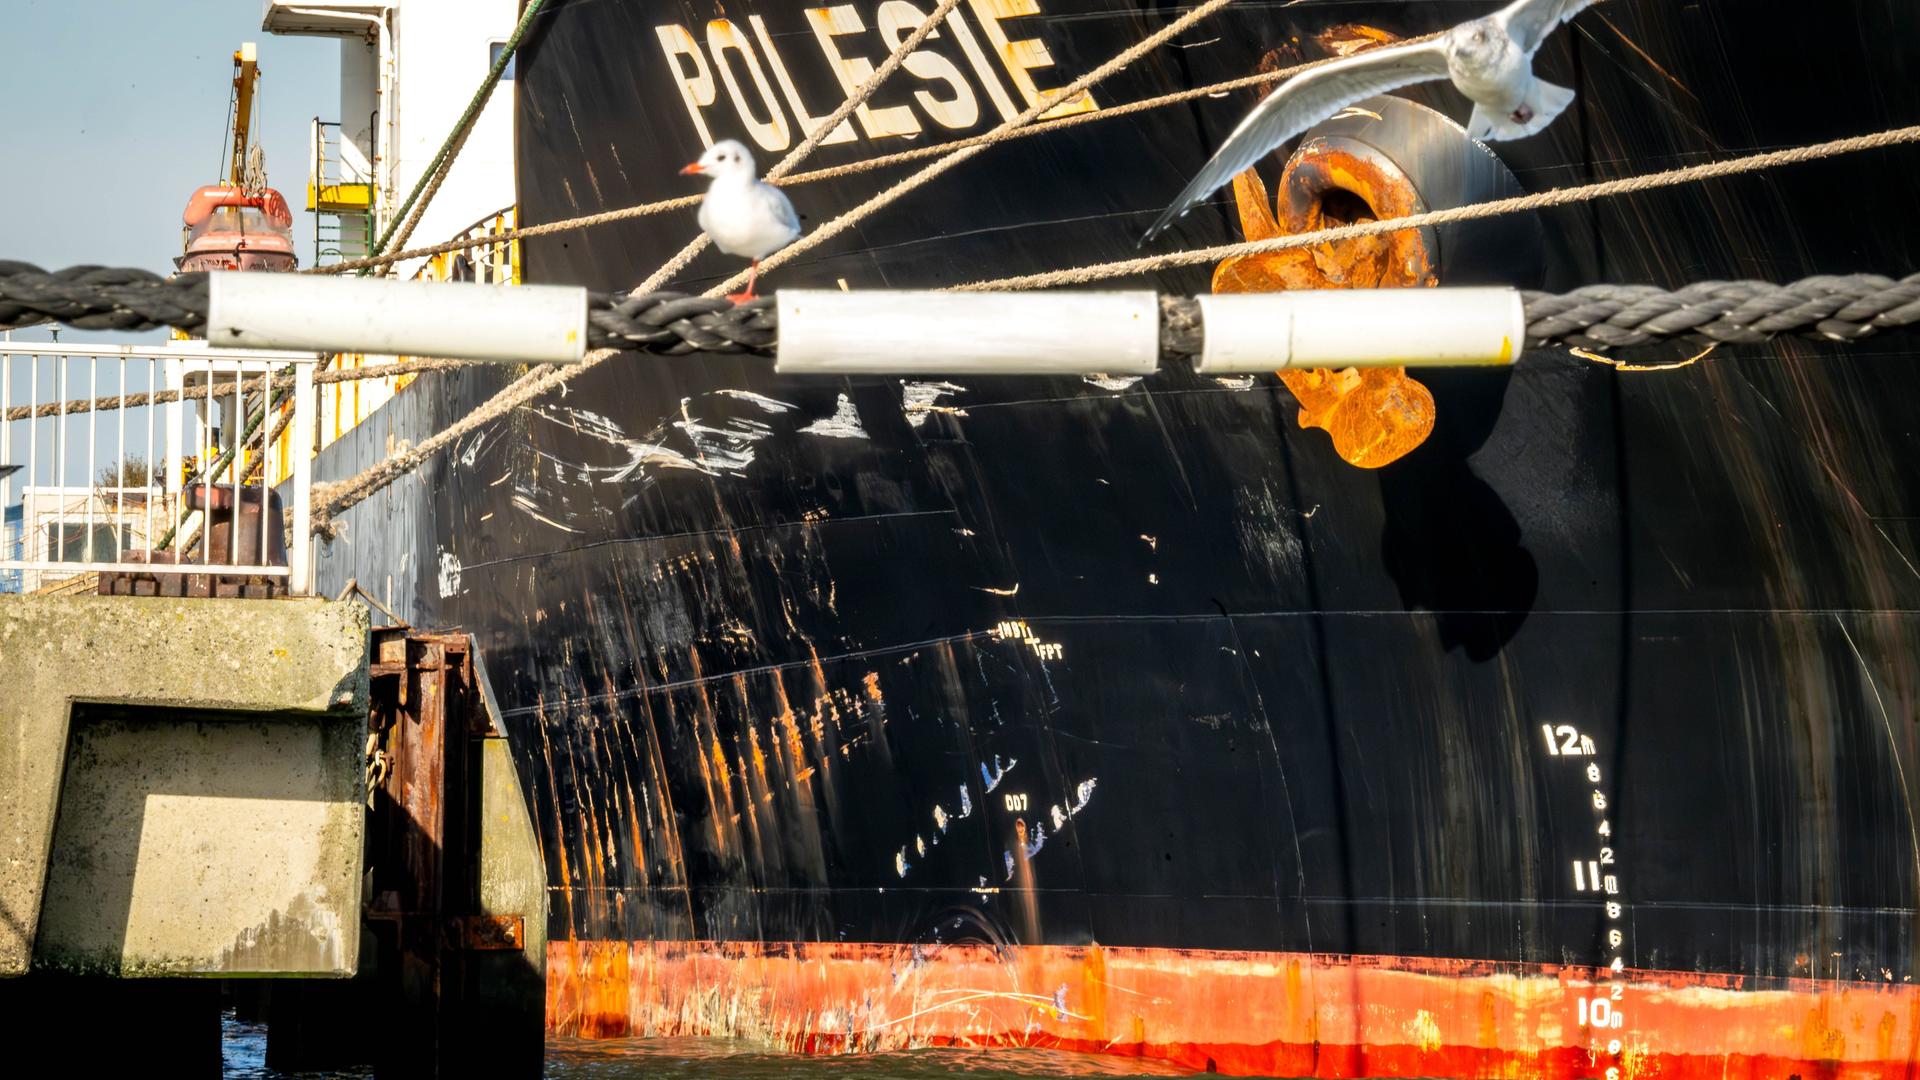 Cuxhaven: Die Schäden am Frachtschiff "Polesie". Infolge des Zusammenstoßes mit der "Polesie" ist der Frachter "Verity" in der in der Nordsee gesunken.